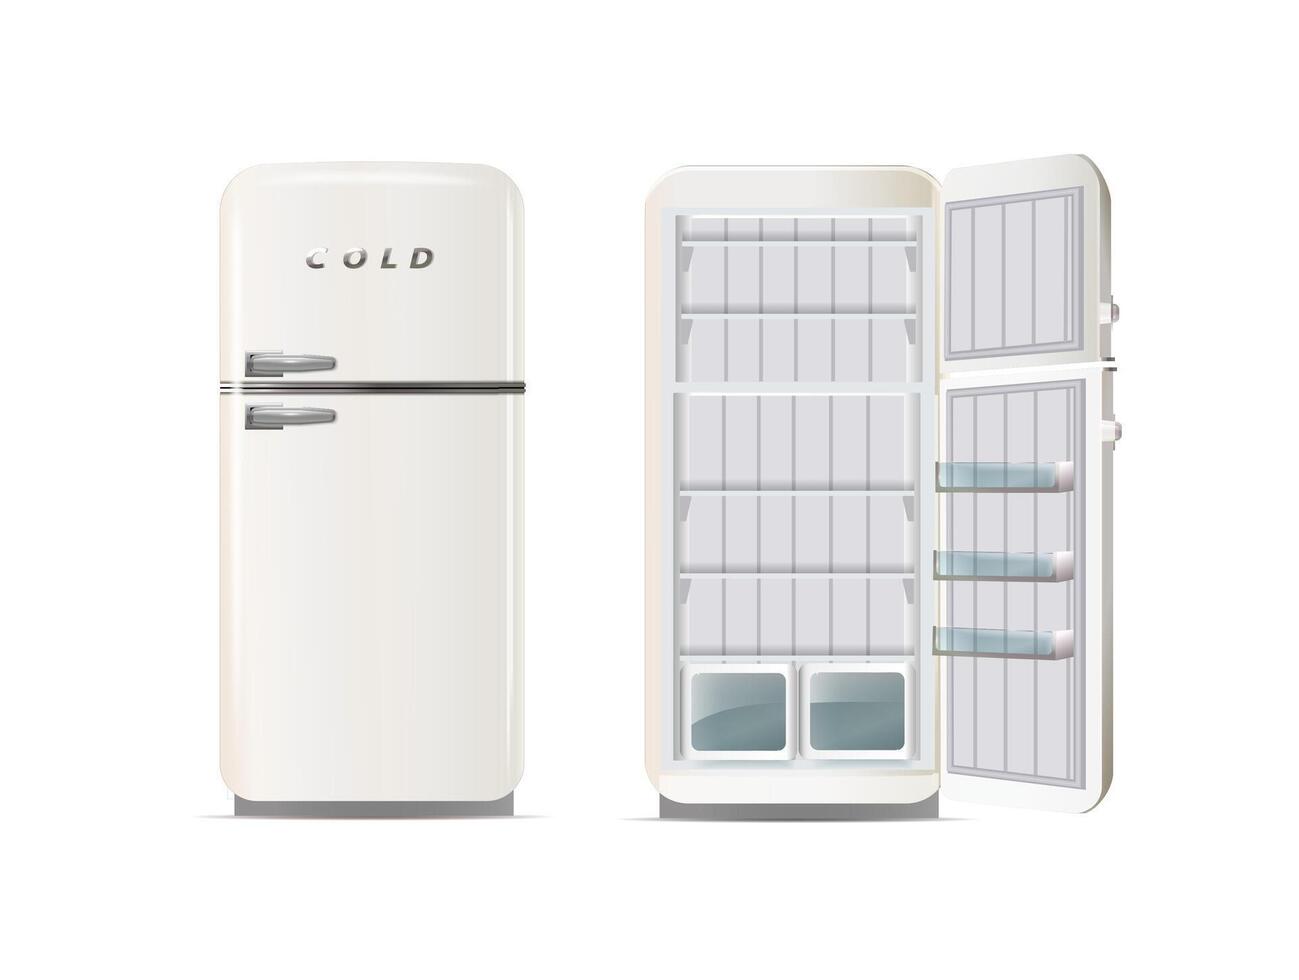 moderno frigoriferi. realistico dispositivi di raffreddamento, frigoriferi vettore